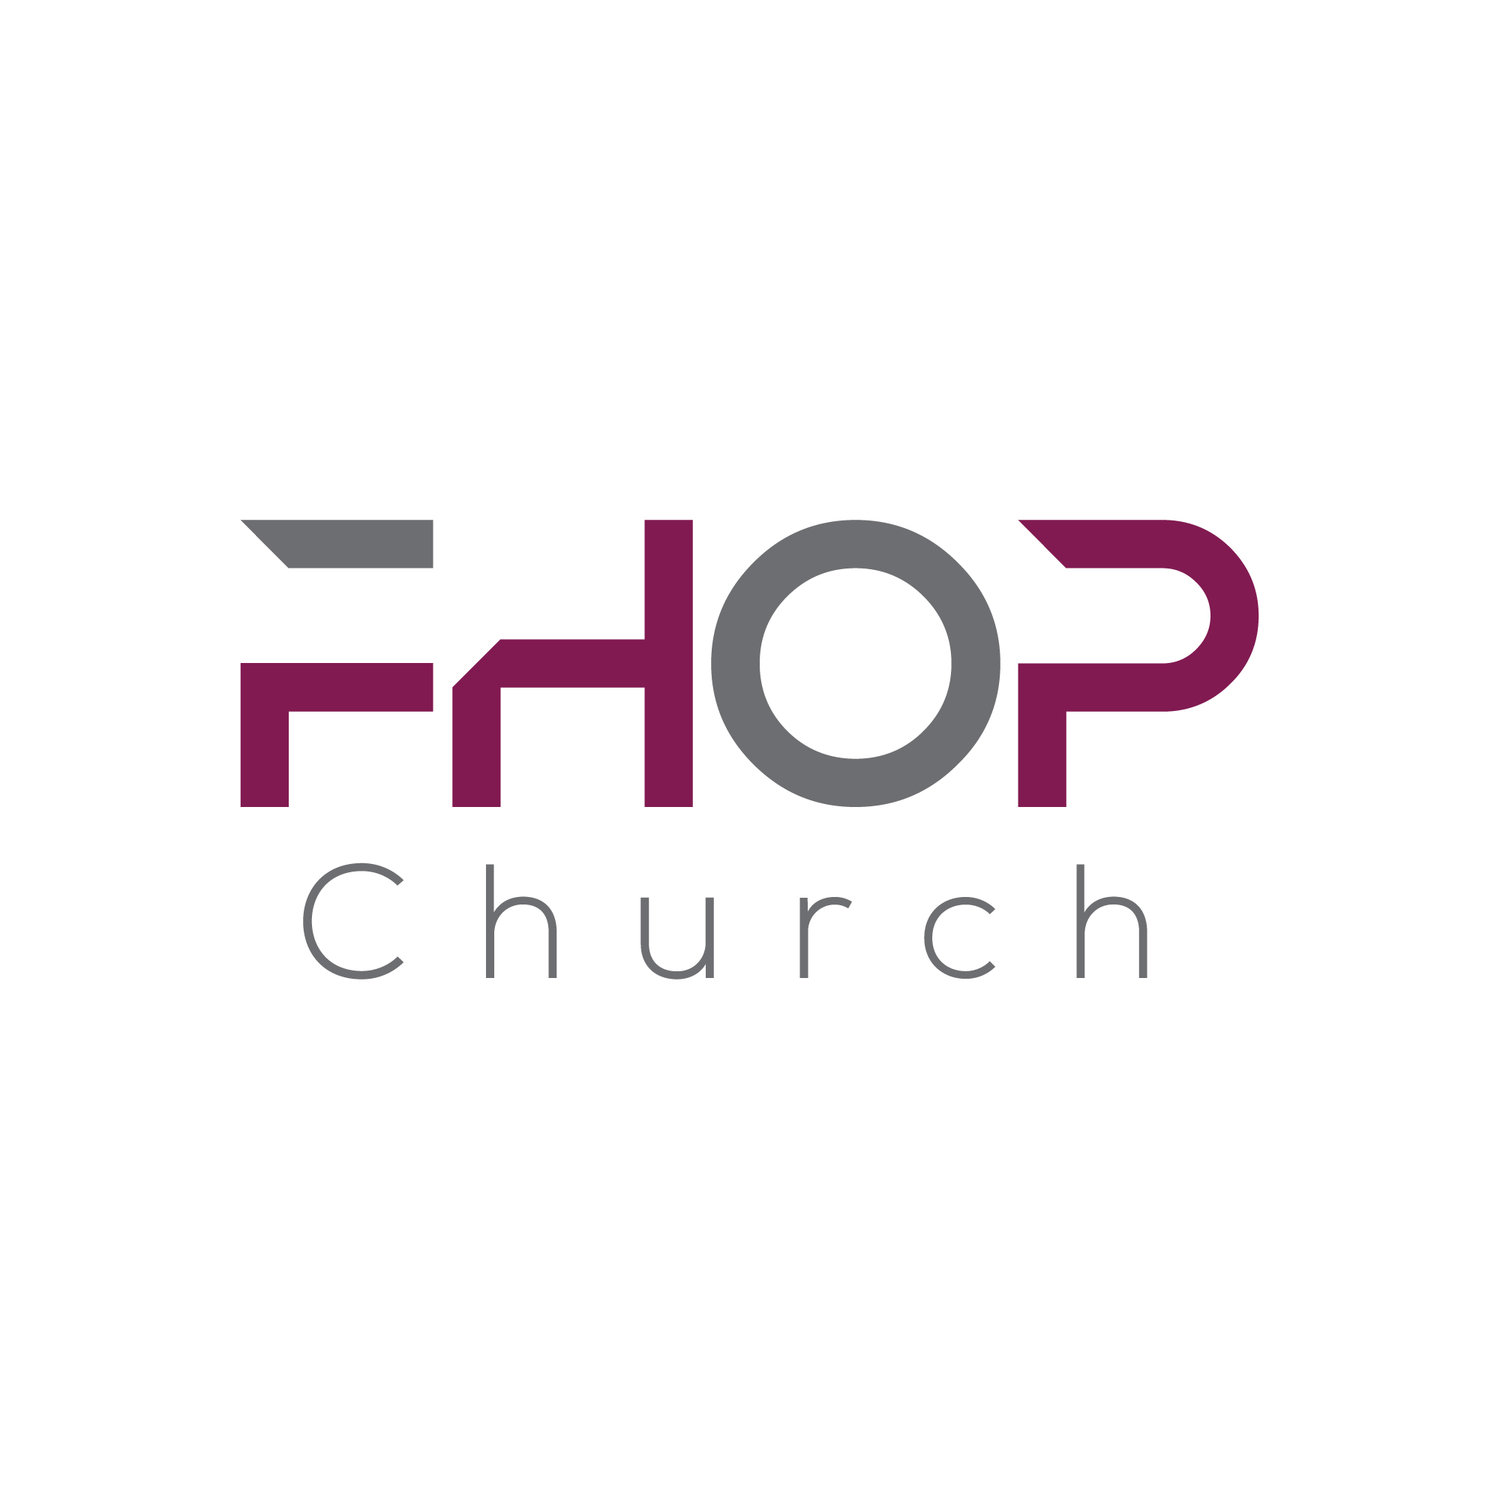 FHOP.CHURCH